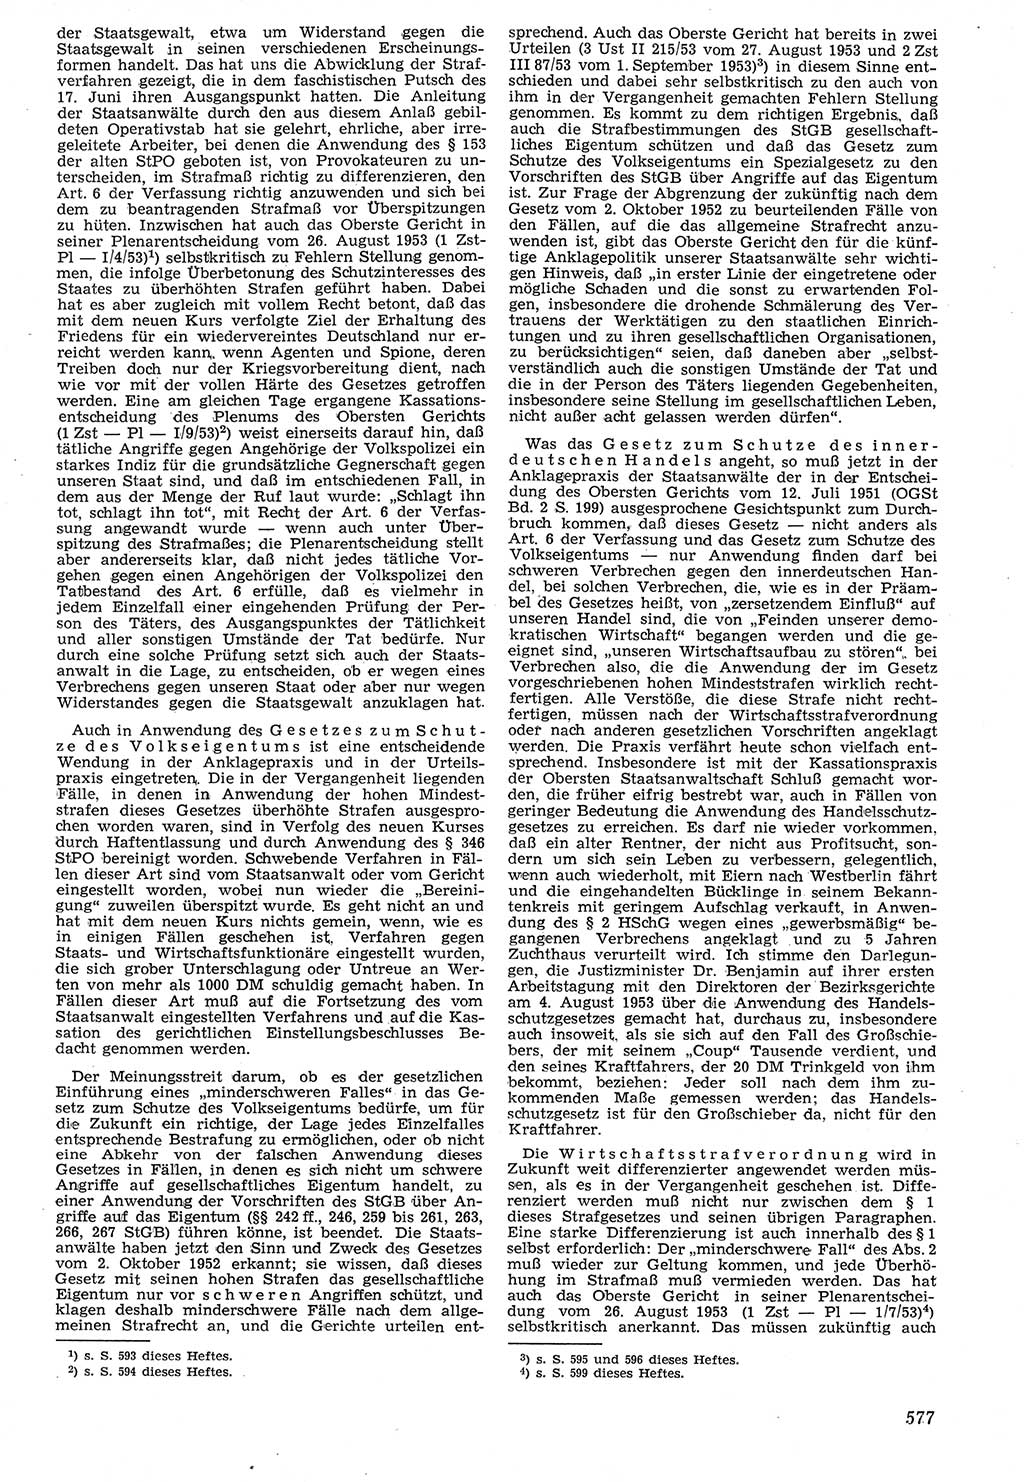 Neue Justiz (NJ), Zeitschrift für Recht und Rechtswissenschaft [Deutsche Demokratische Republik (DDR)], 7. Jahrgang 1953, Seite 577 (NJ DDR 1953, S. 577)